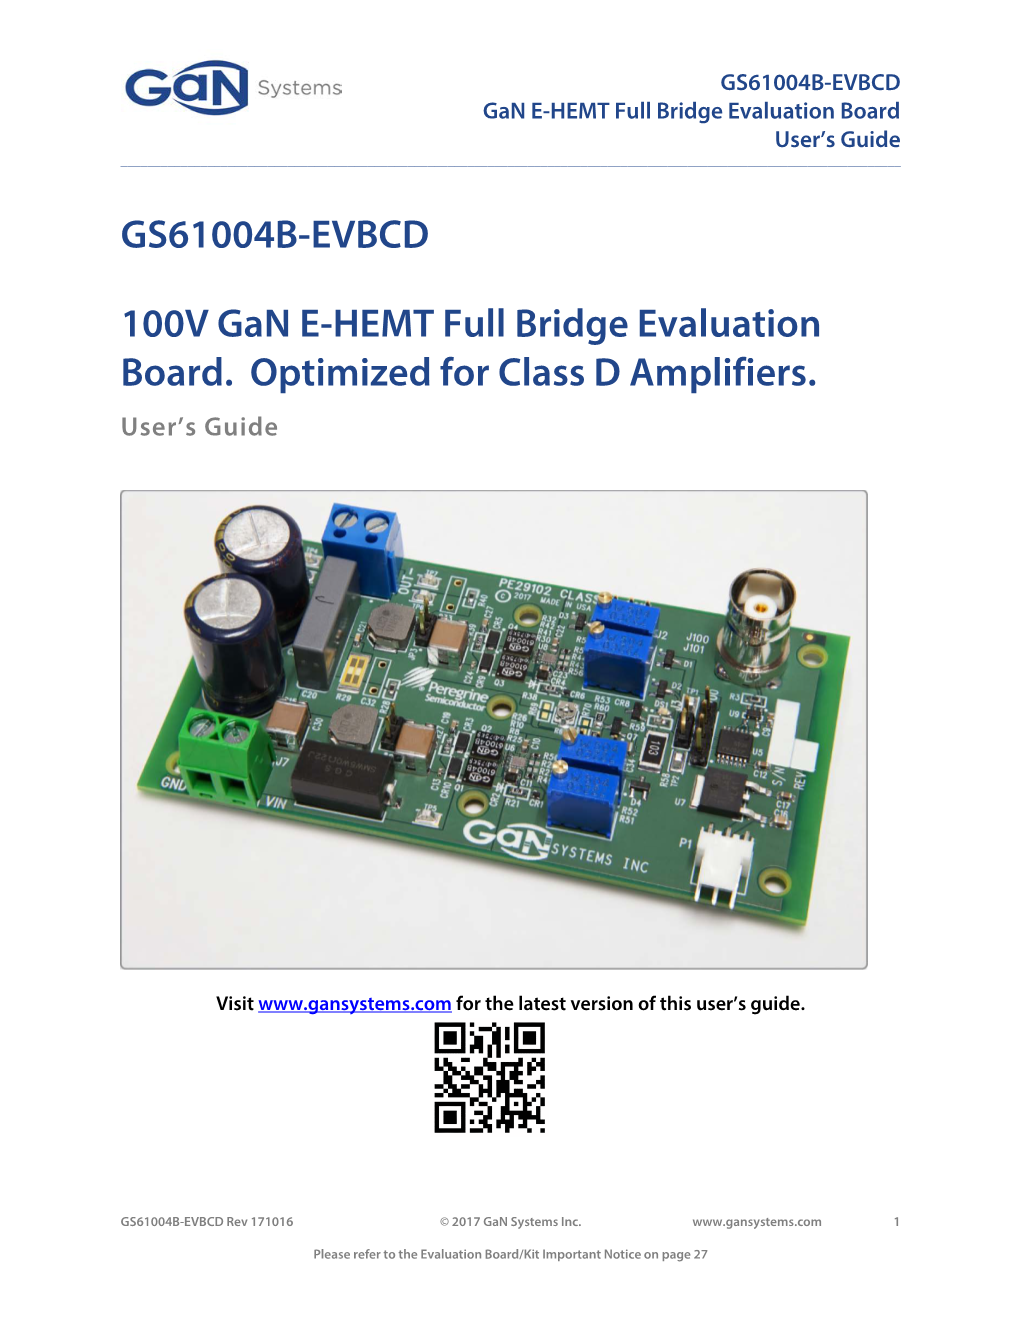 GS61004B-EVBCD 100V Gan E-HEMT Full Bridge